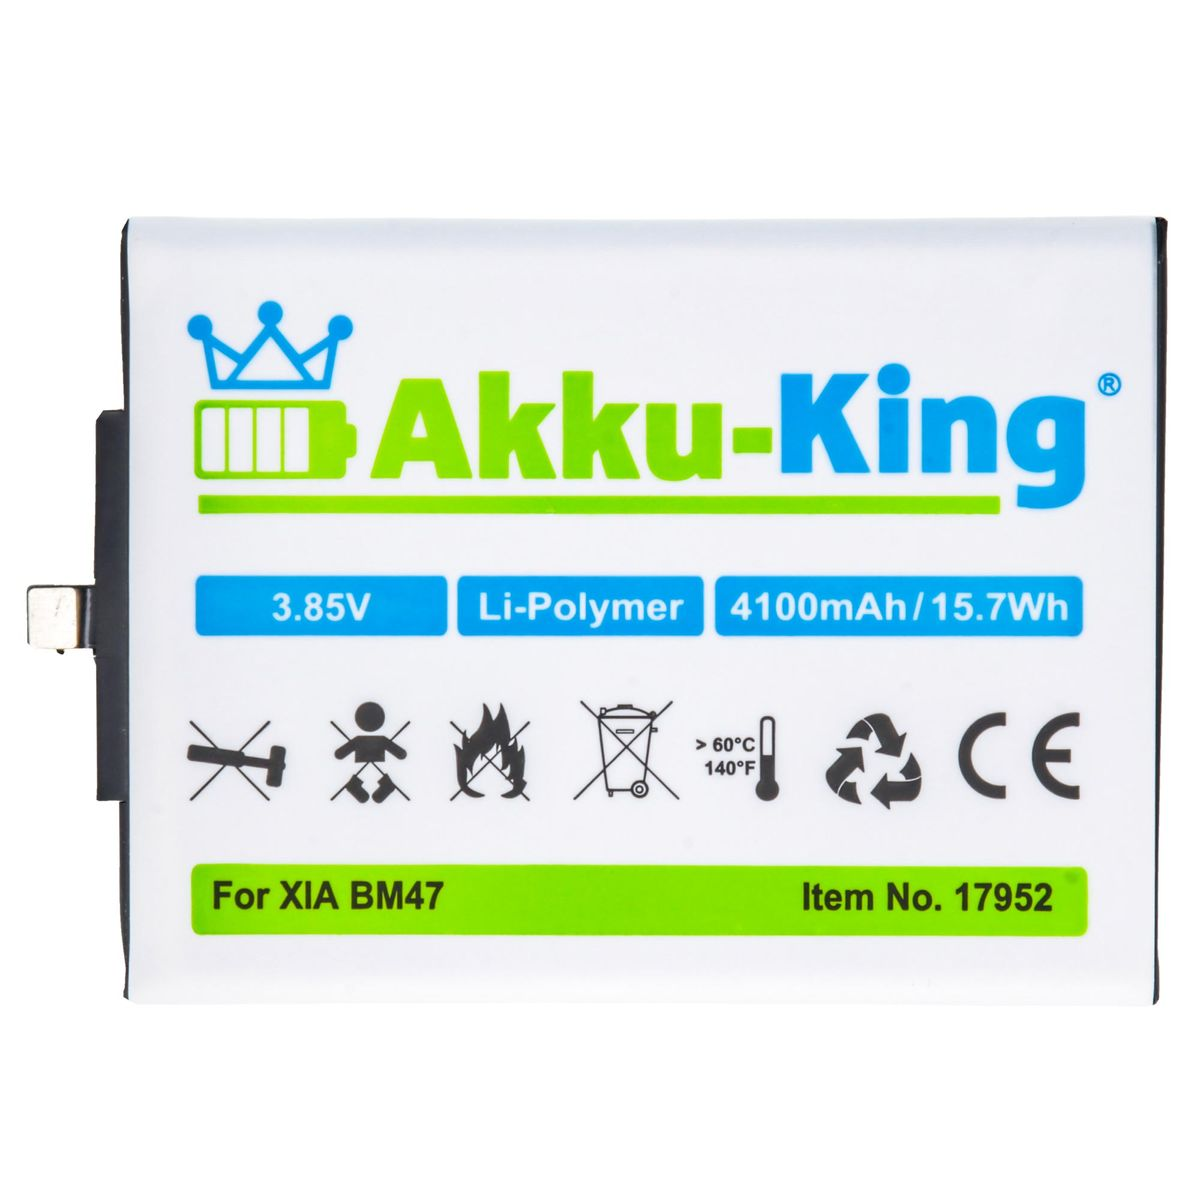 Akku BM47 kompatibel 4100mAh Volt, Li-Polymer AKKU-KING Xiaomi Handy-Akku, 3.85 mit